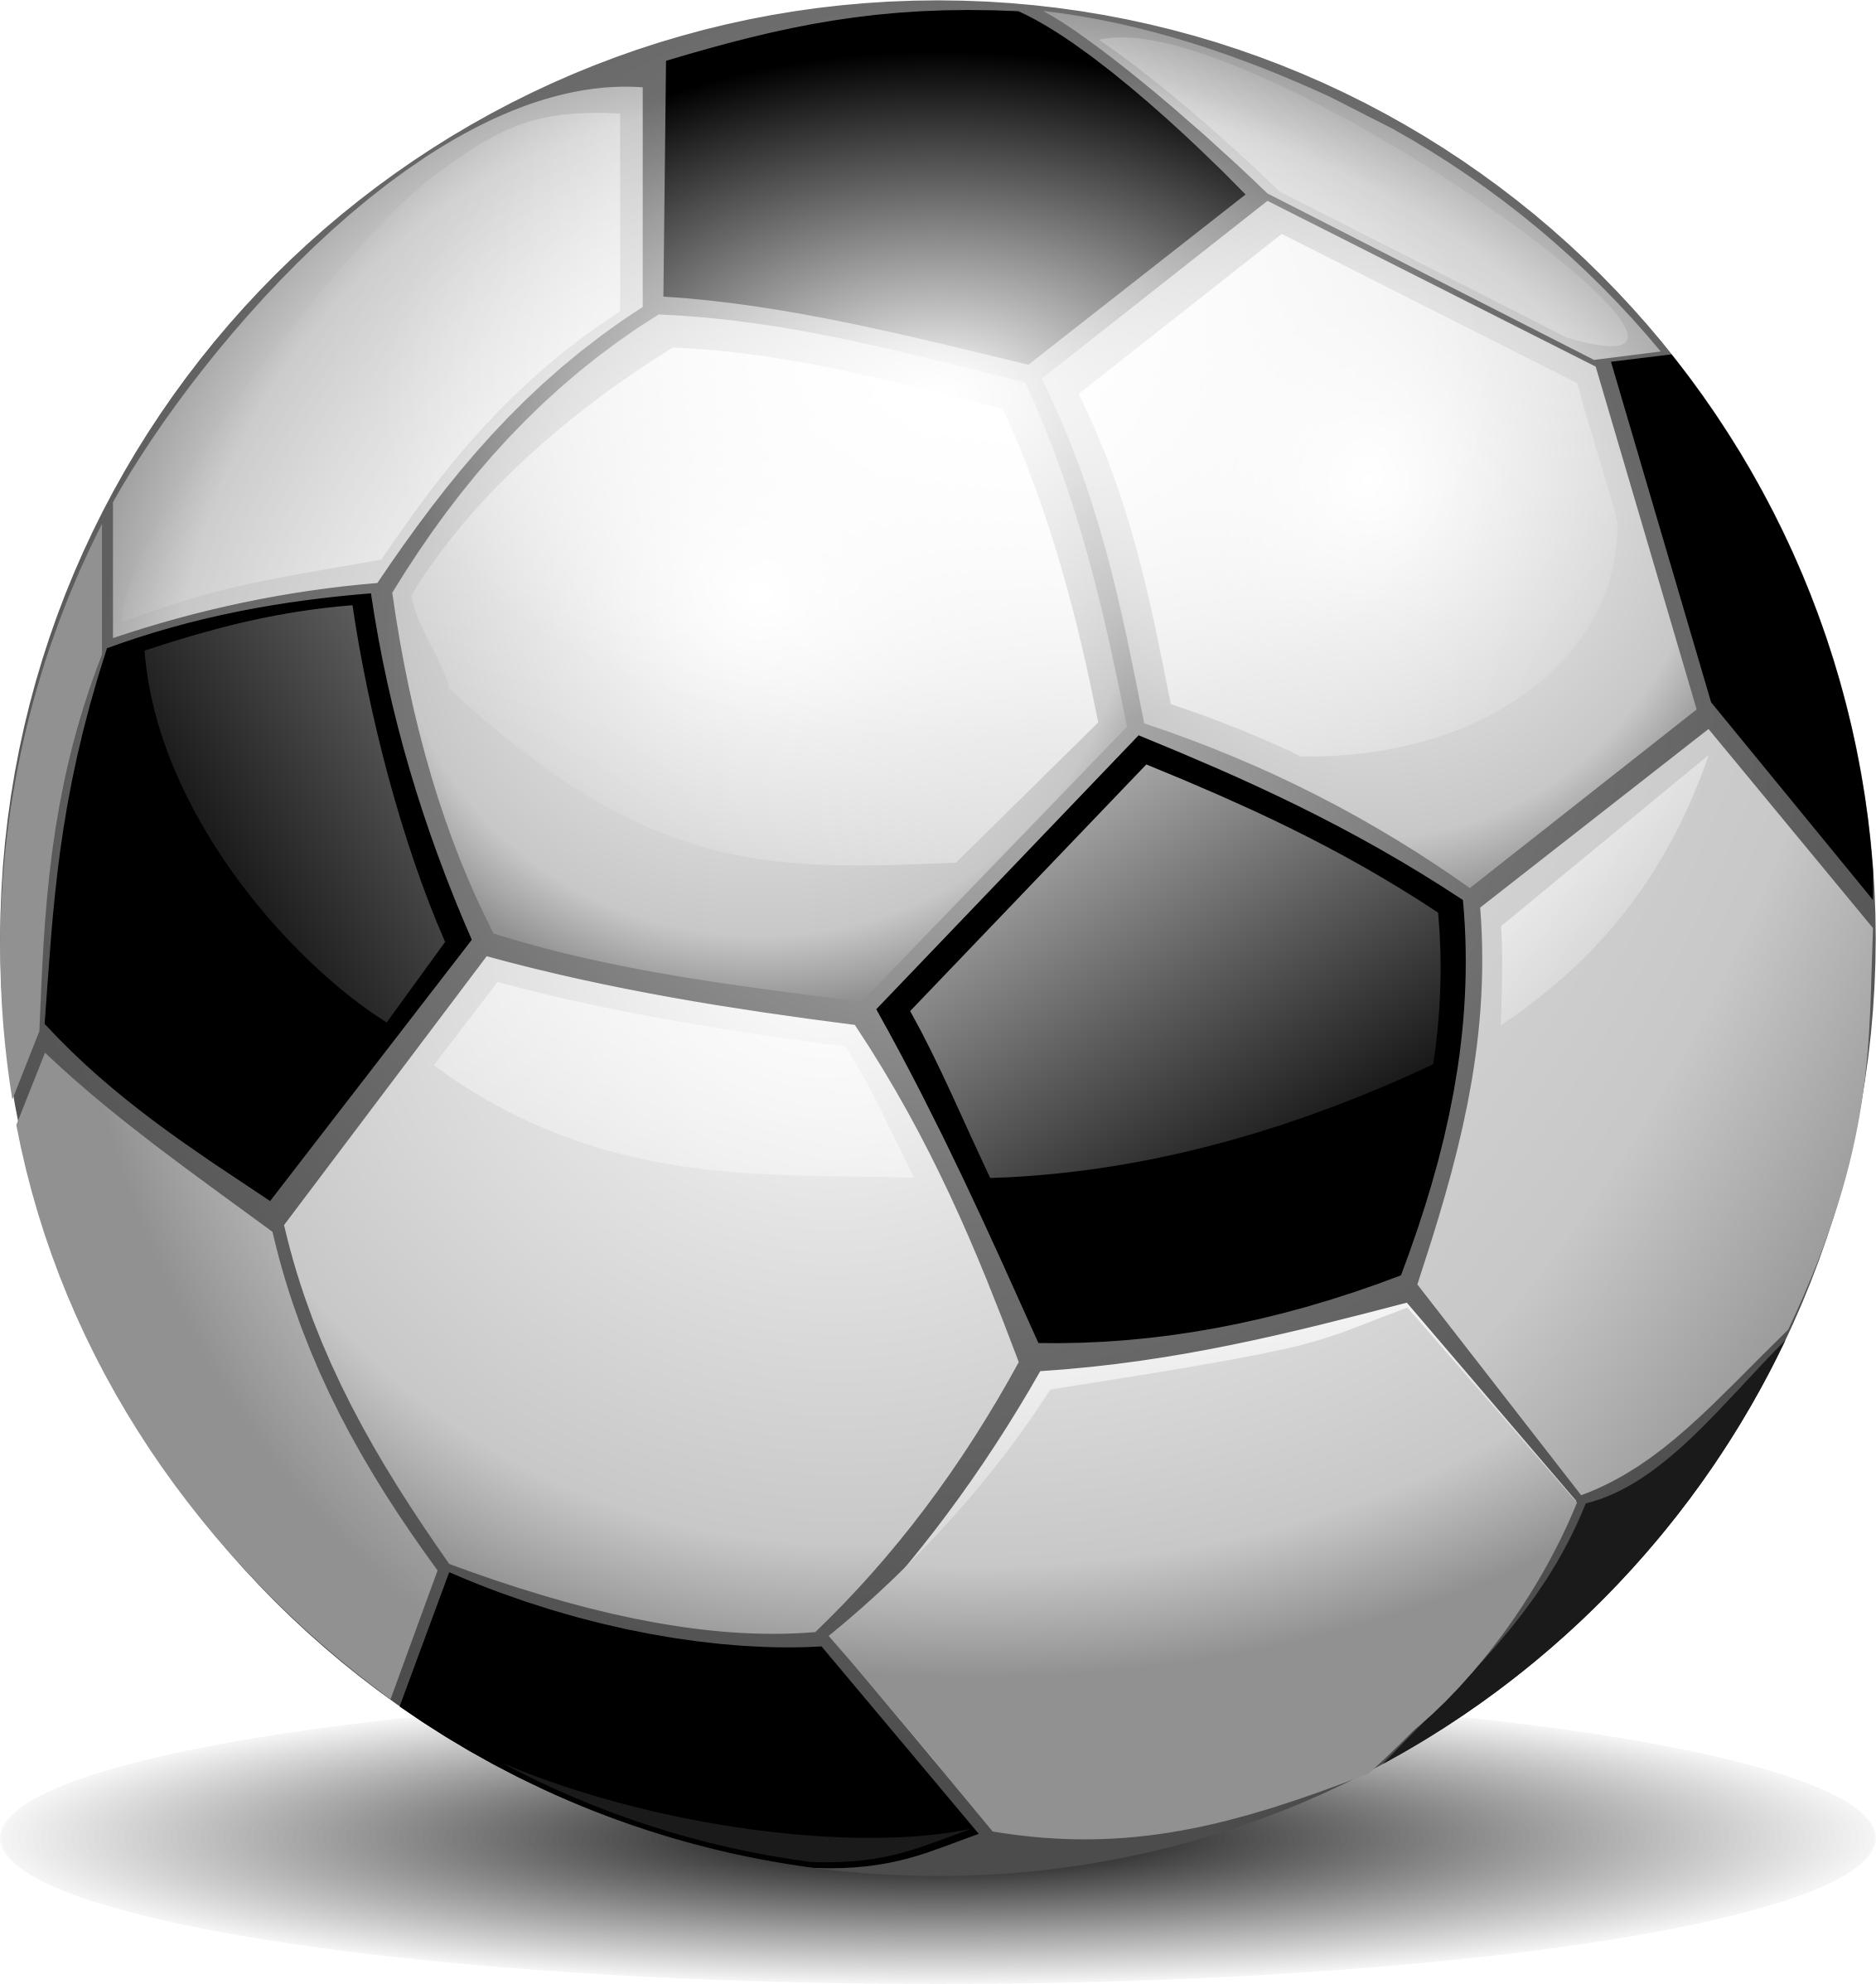 Football ball icons